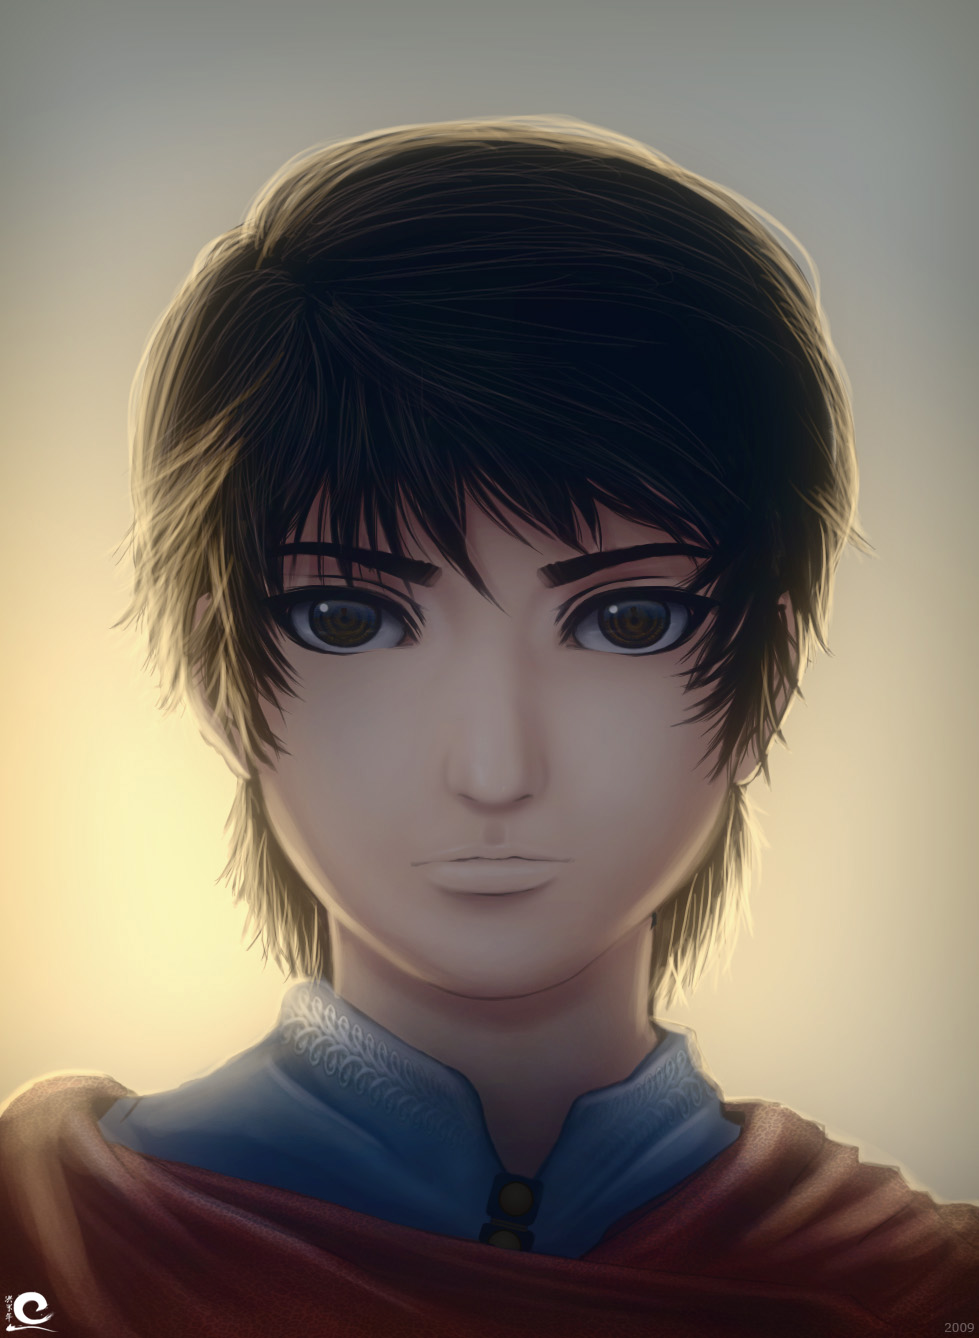 Kyoshiro - the young prince